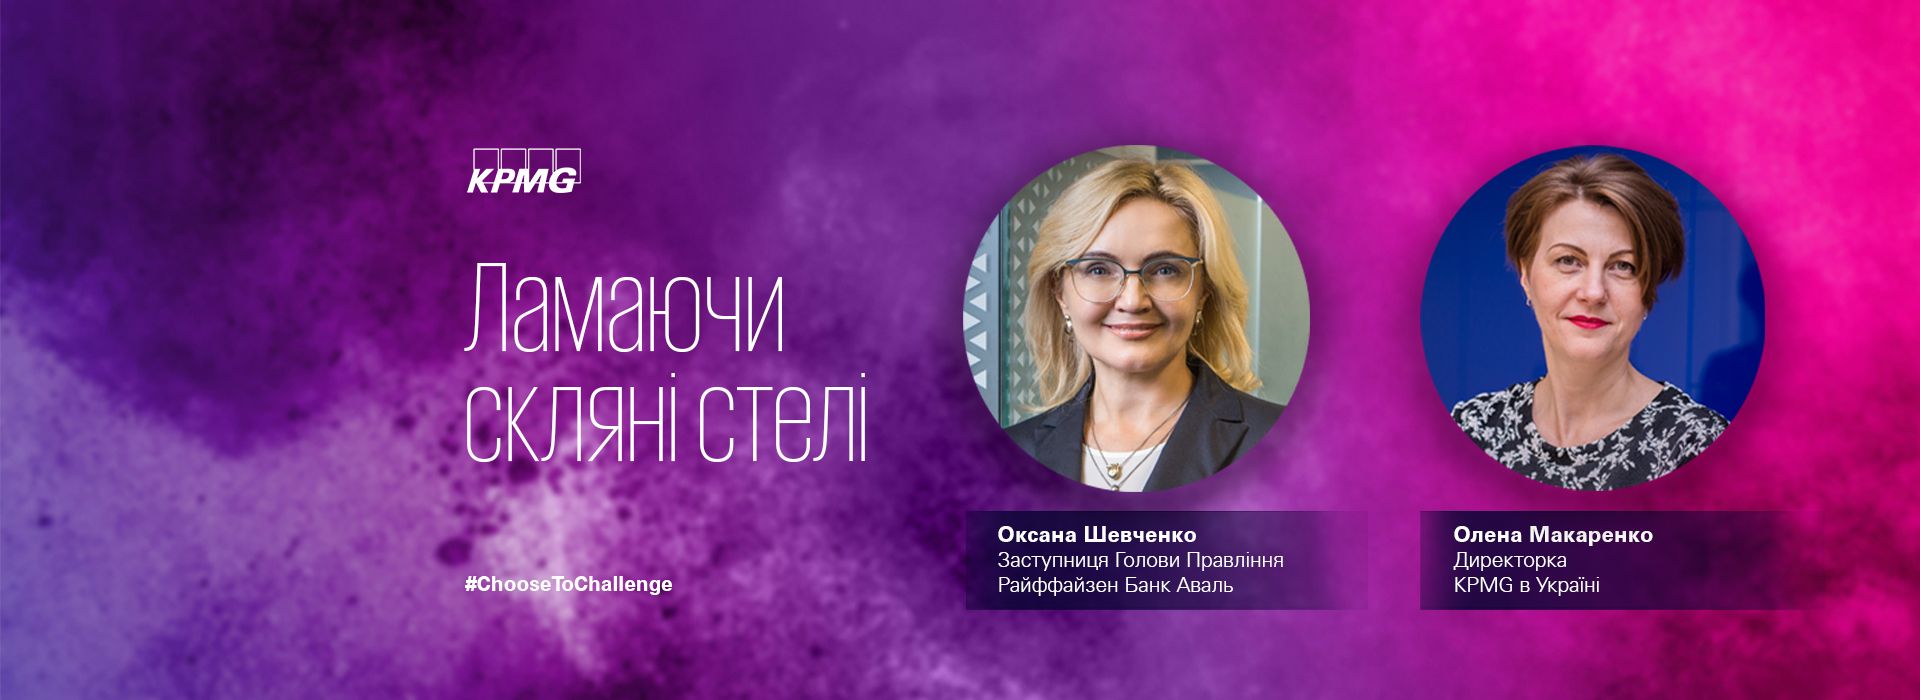 Оксана Шевченко, заступниця Голови Правління Raiffeisen Bank